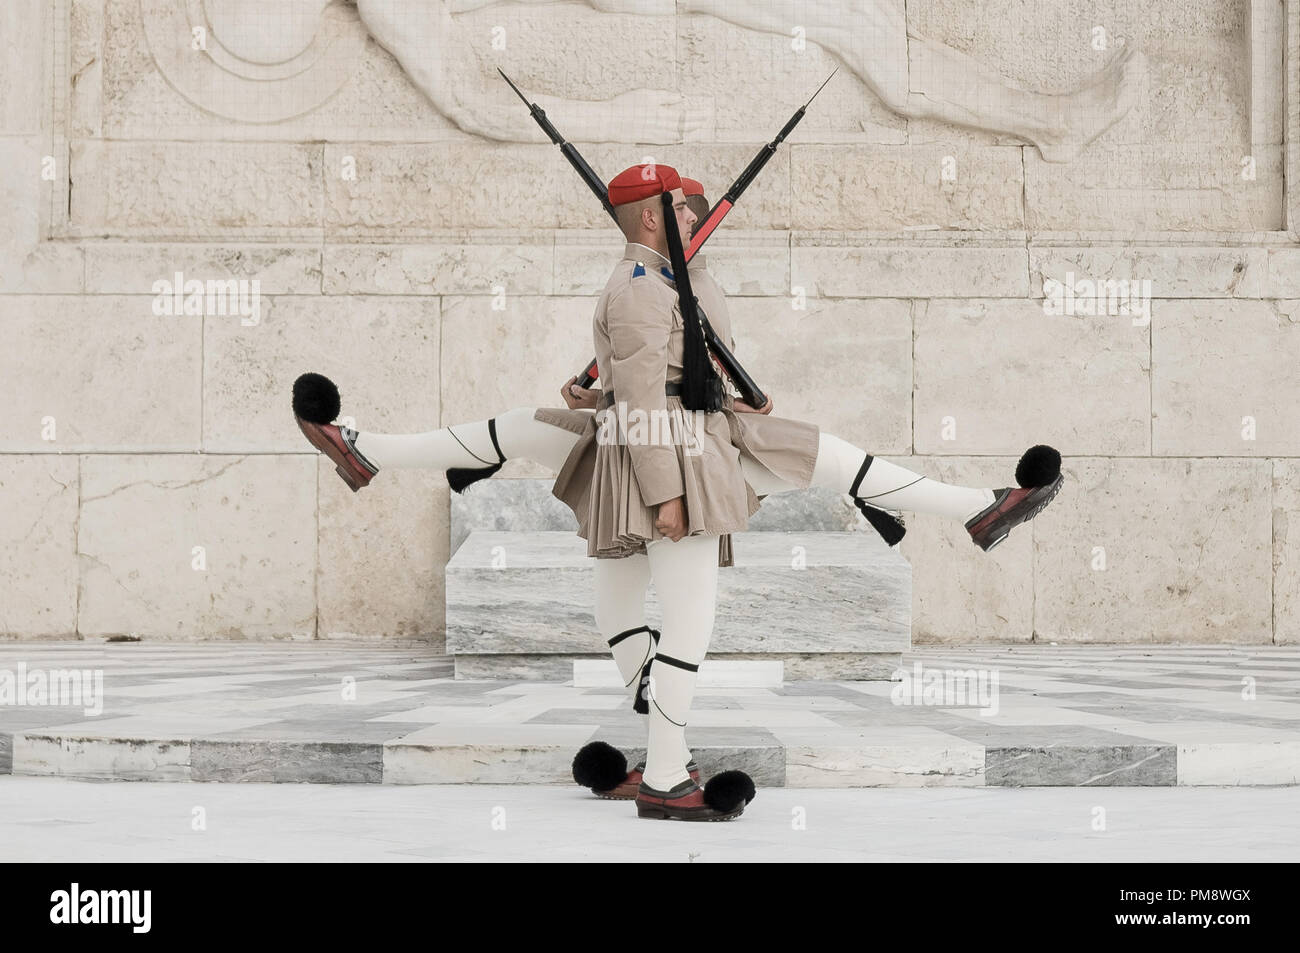 Due protezioni visto al Milite Ignoto monumento davanti al parlamento greco. I turisti si vede guardando il cambio della guardia a Syndagma piazza davanti al parlamento greco ad Atene, in Grecia. Foto Stock